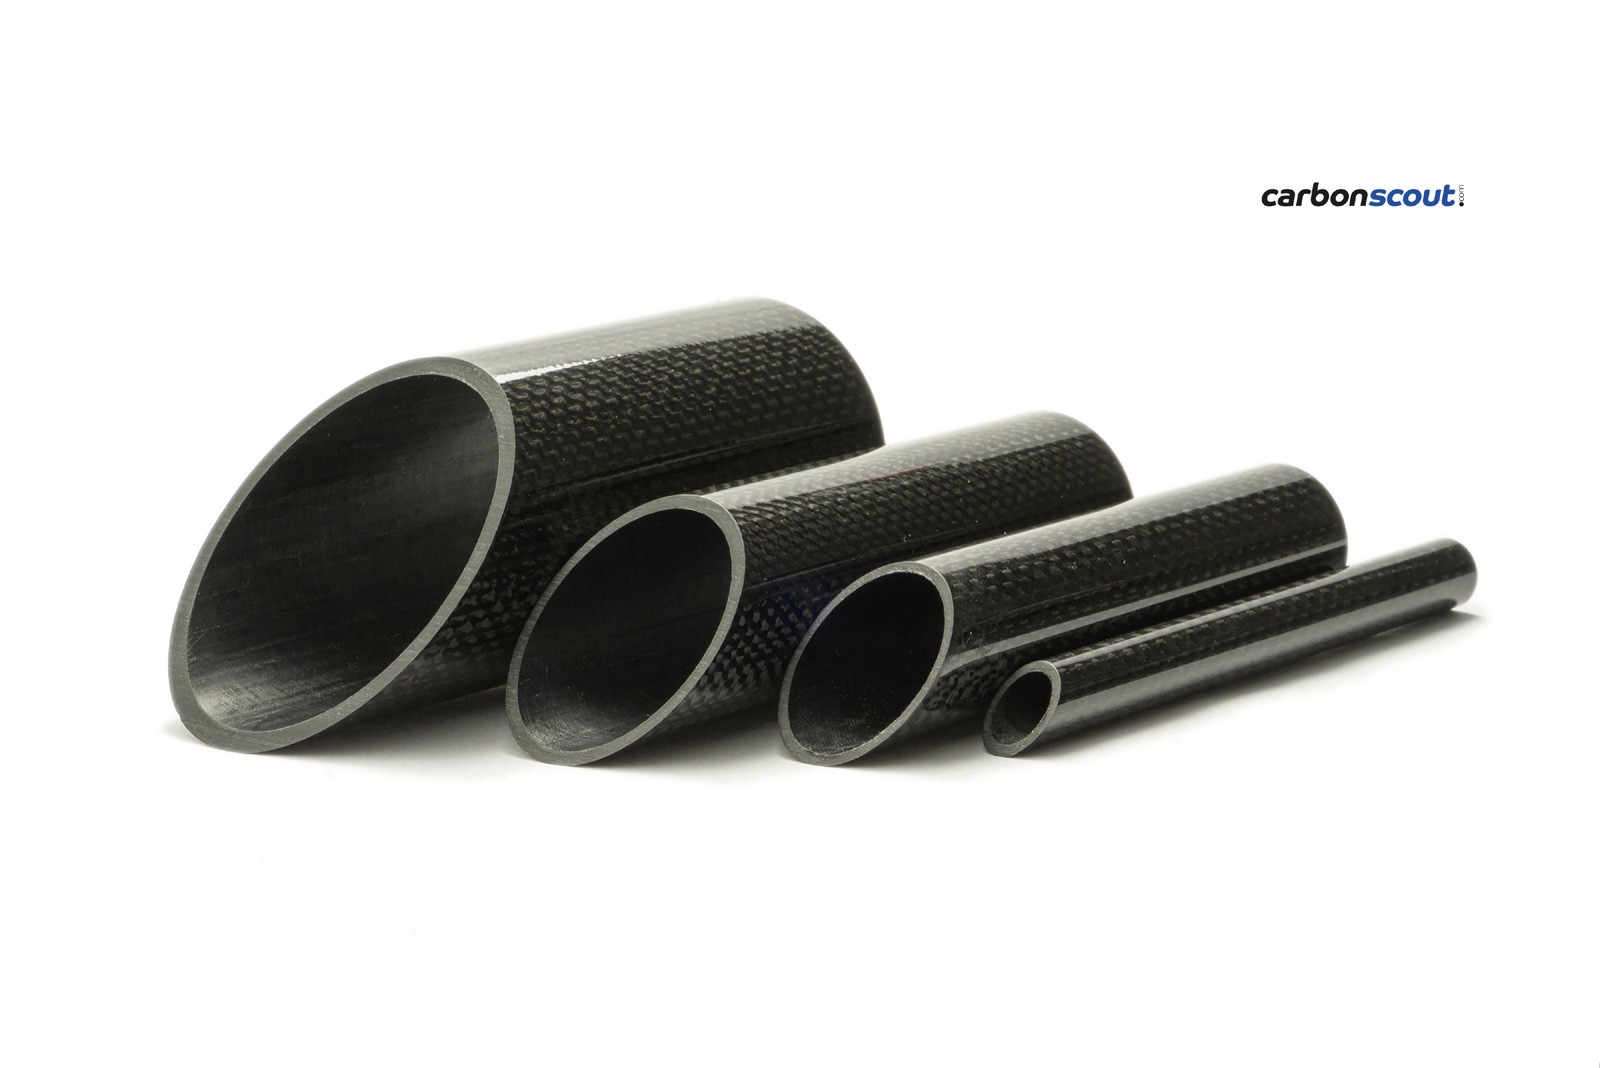 CFK Carbon Rohr gewickelt 7x5-50x48x1000 mm geschliffen und lackiert 